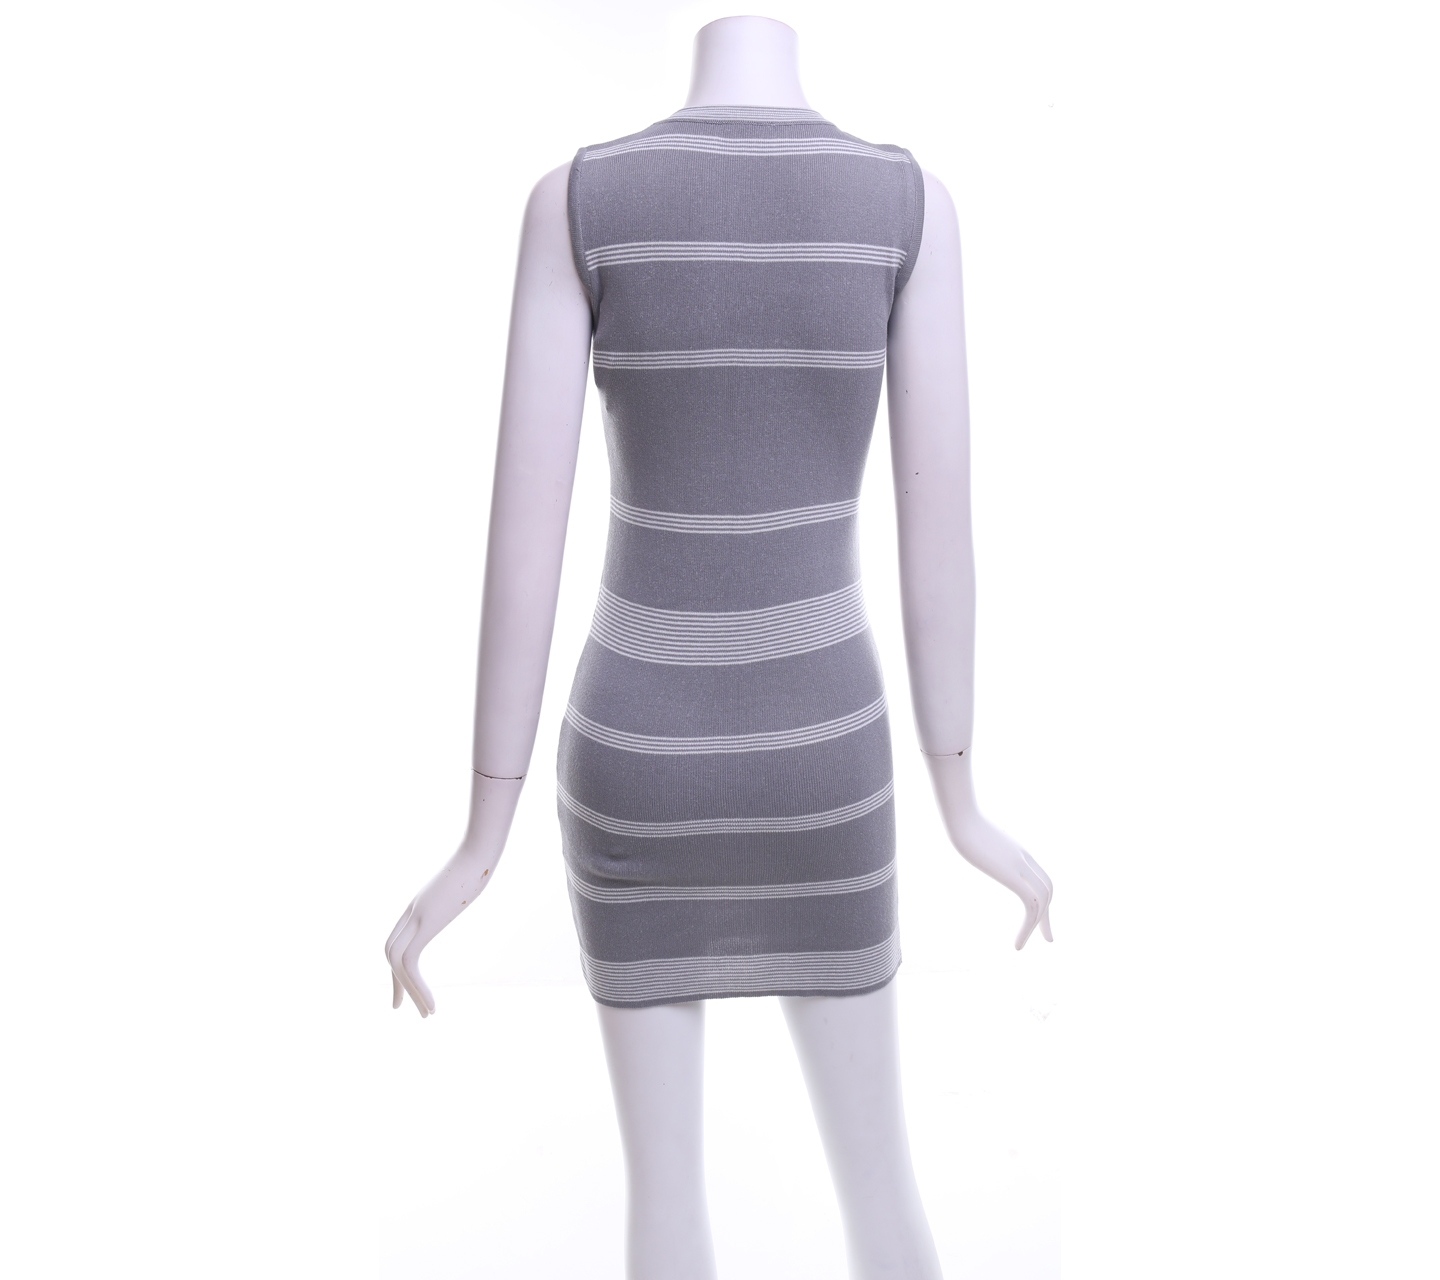 Grey Striped Mini Dress